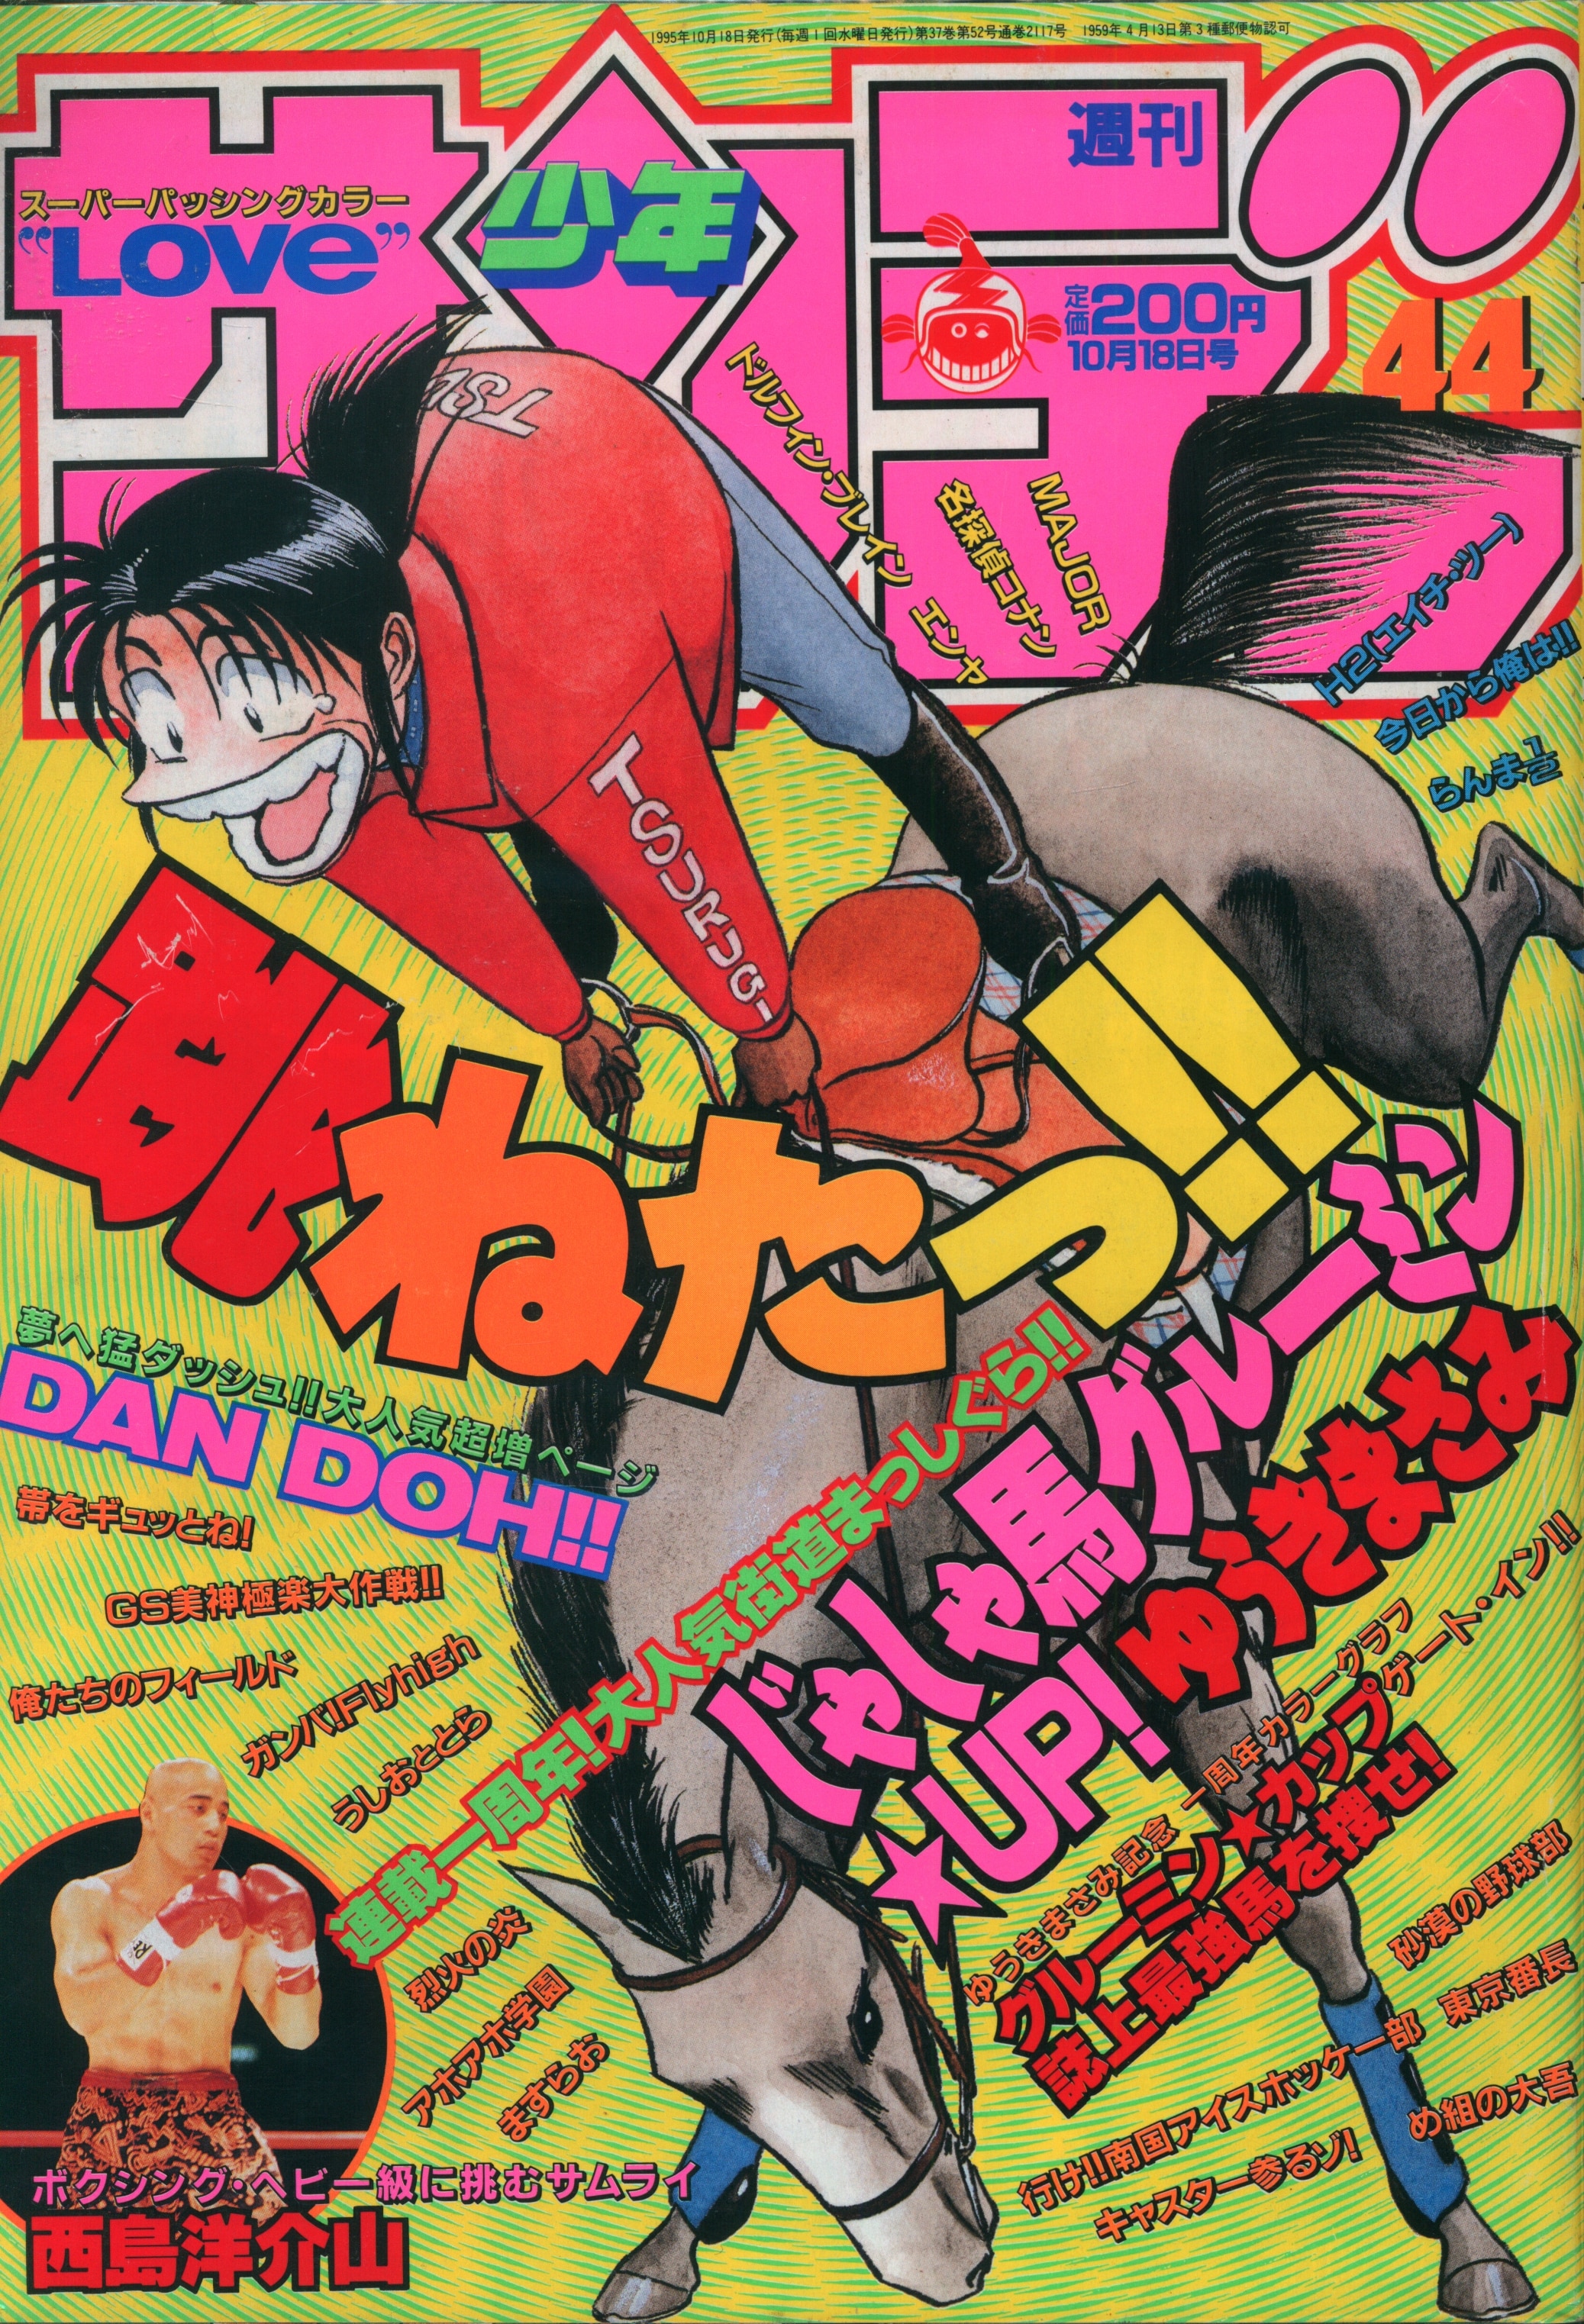 少年サンデー 1995年7月5日号 表紙 雛形あきこ - 少年漫画